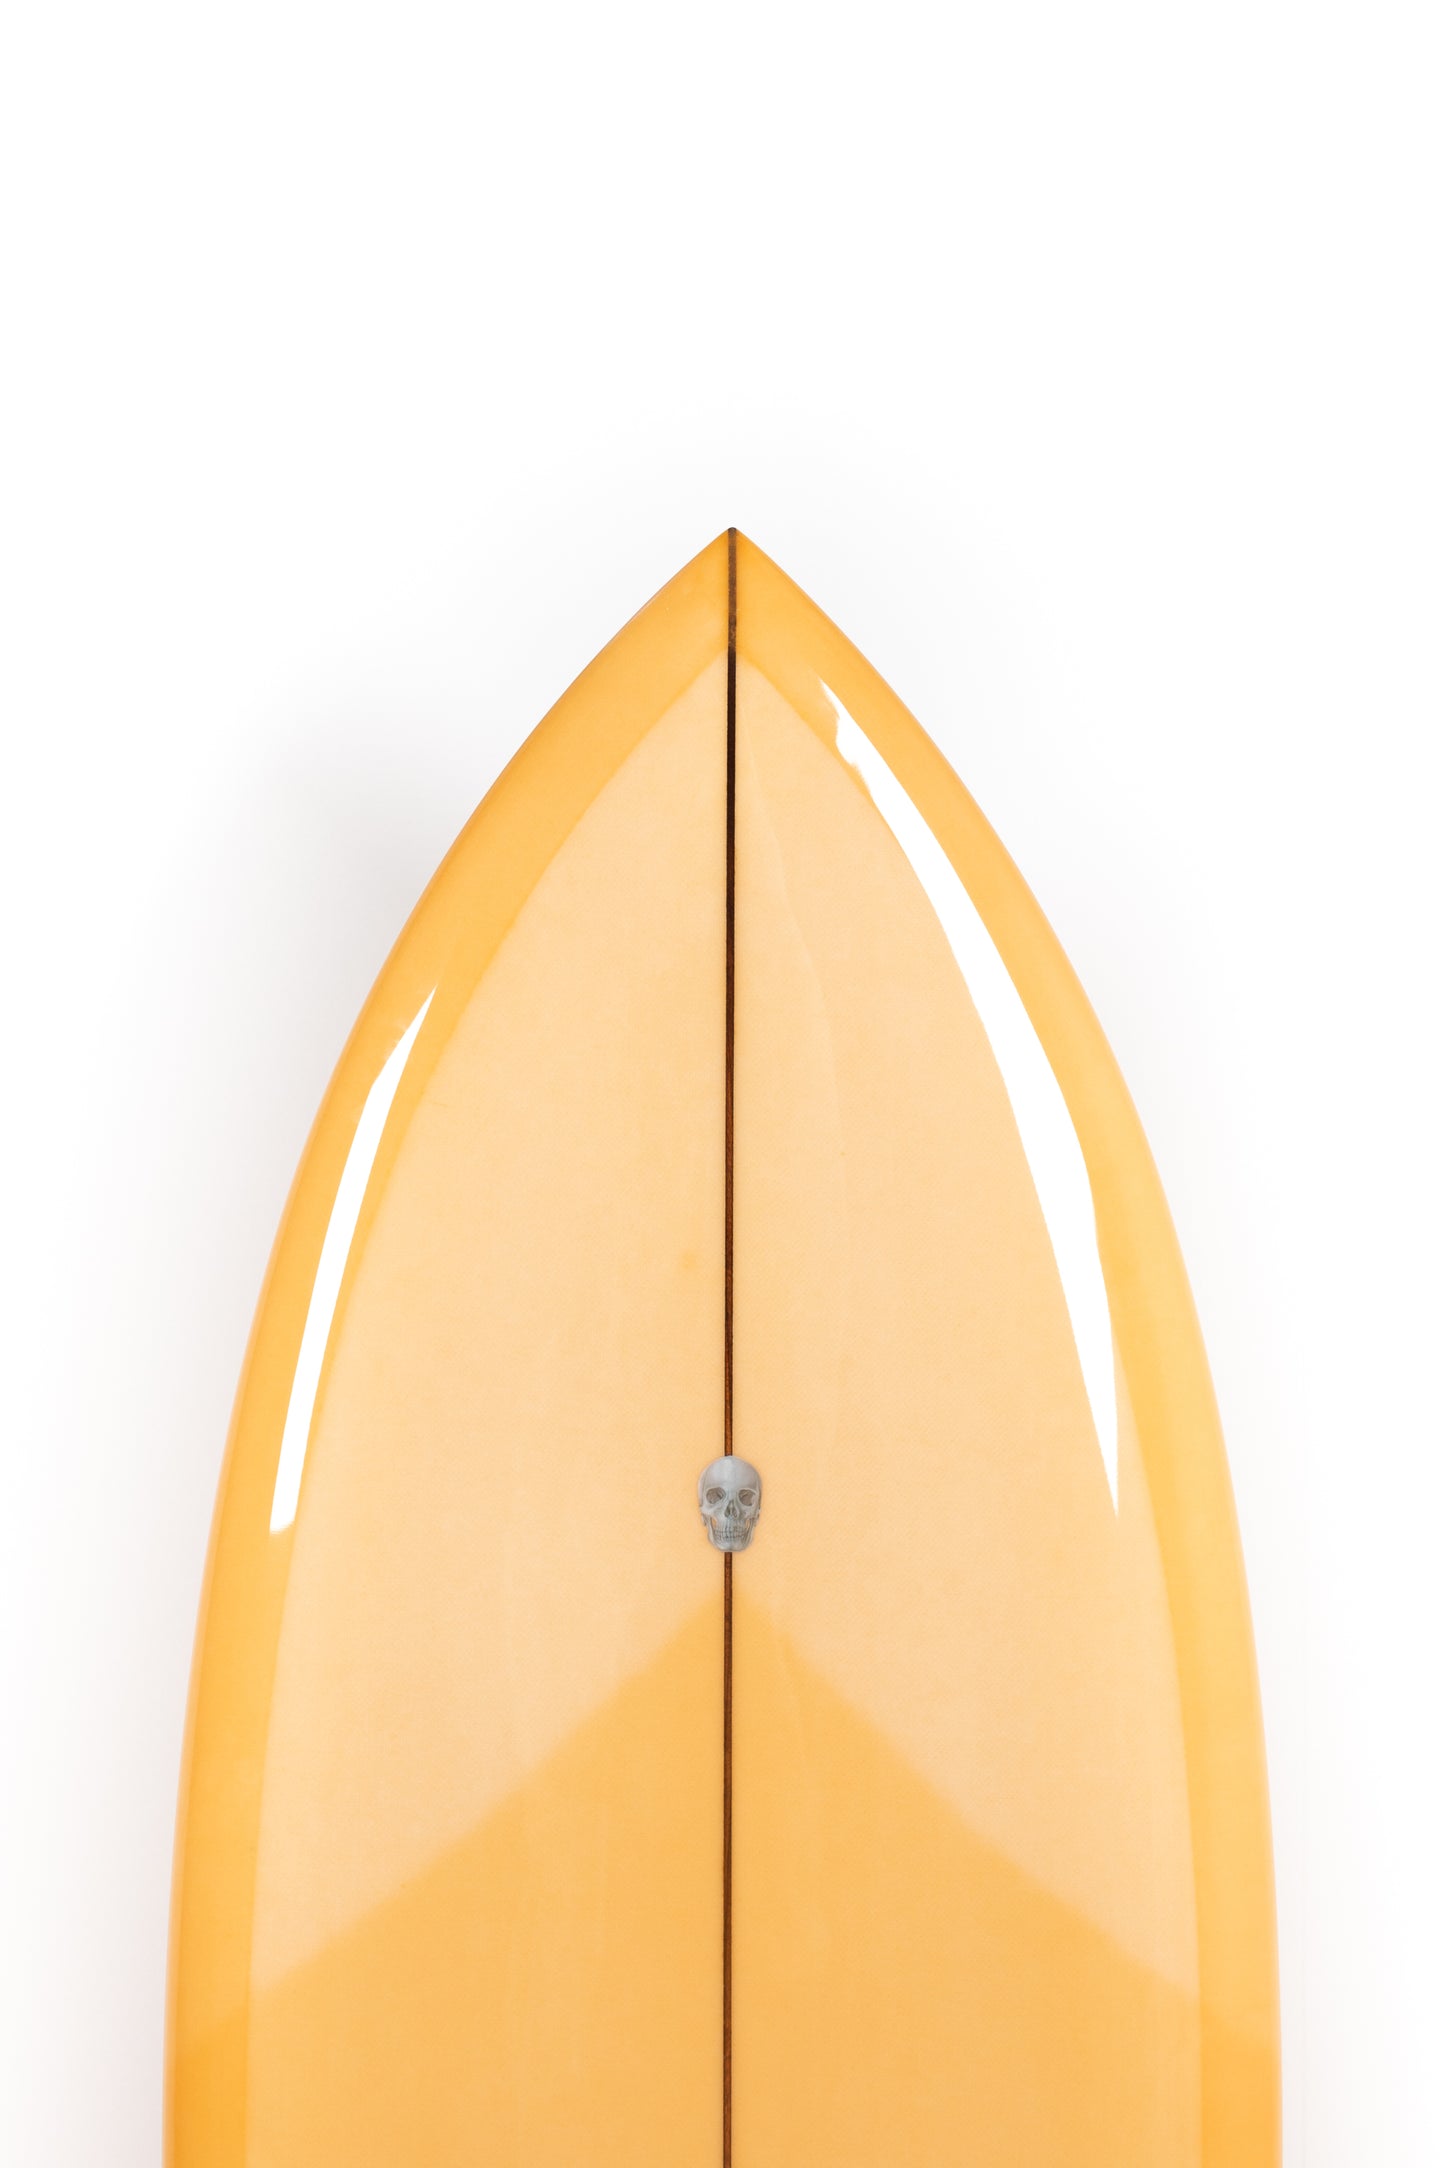 
                  
                    Pukas-Surf-Shop-Christenson-Surfboards-Chris-Fish-Chris-Christenson-5_6_-CX06029
                  
                